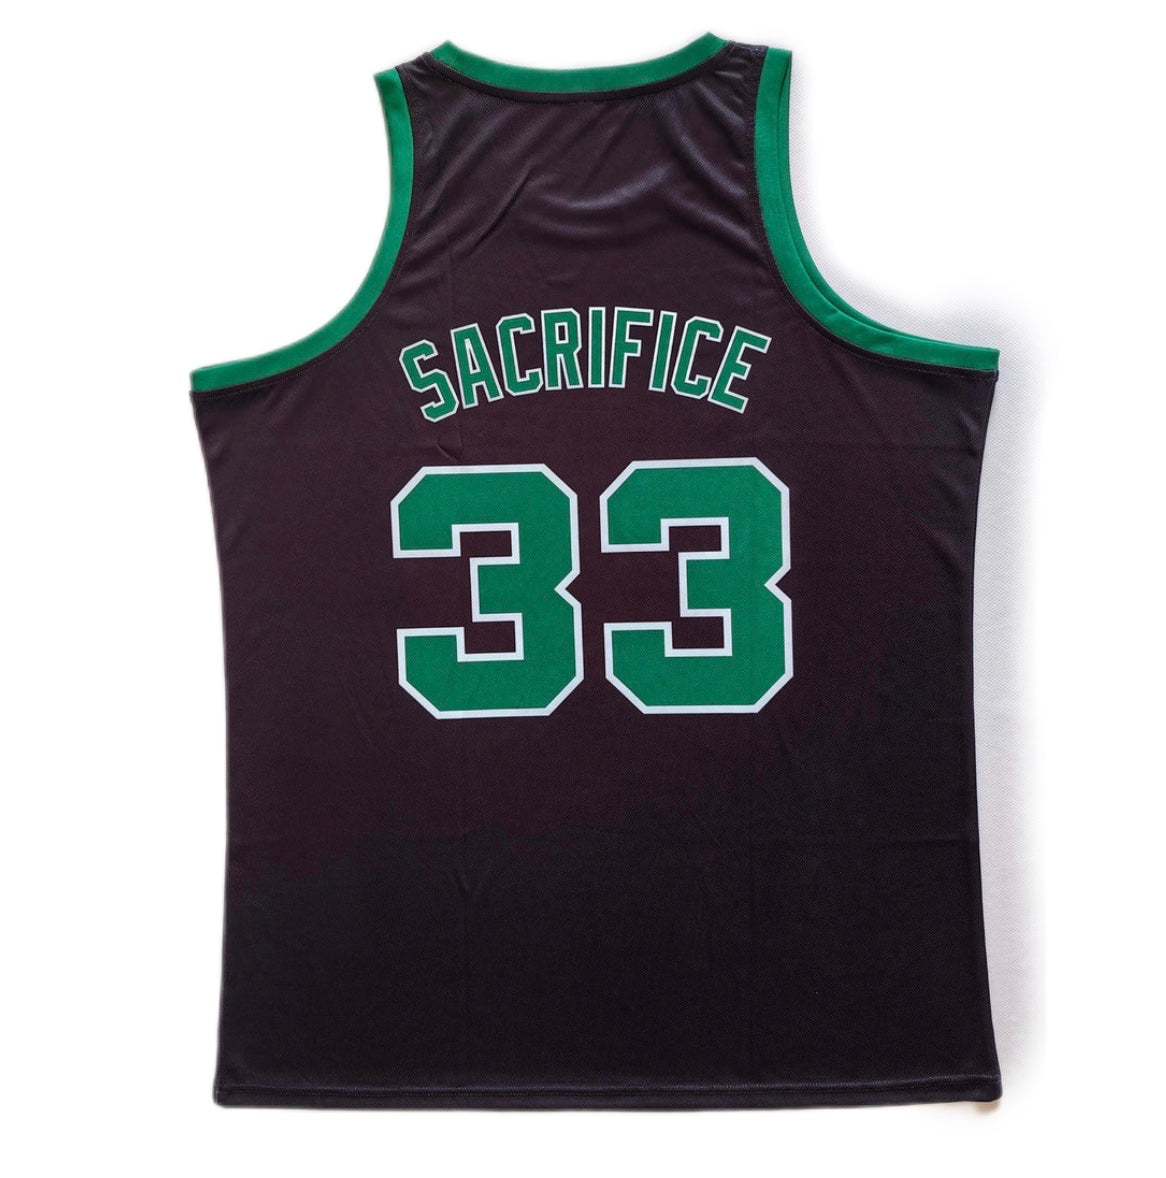 SSS Celtics